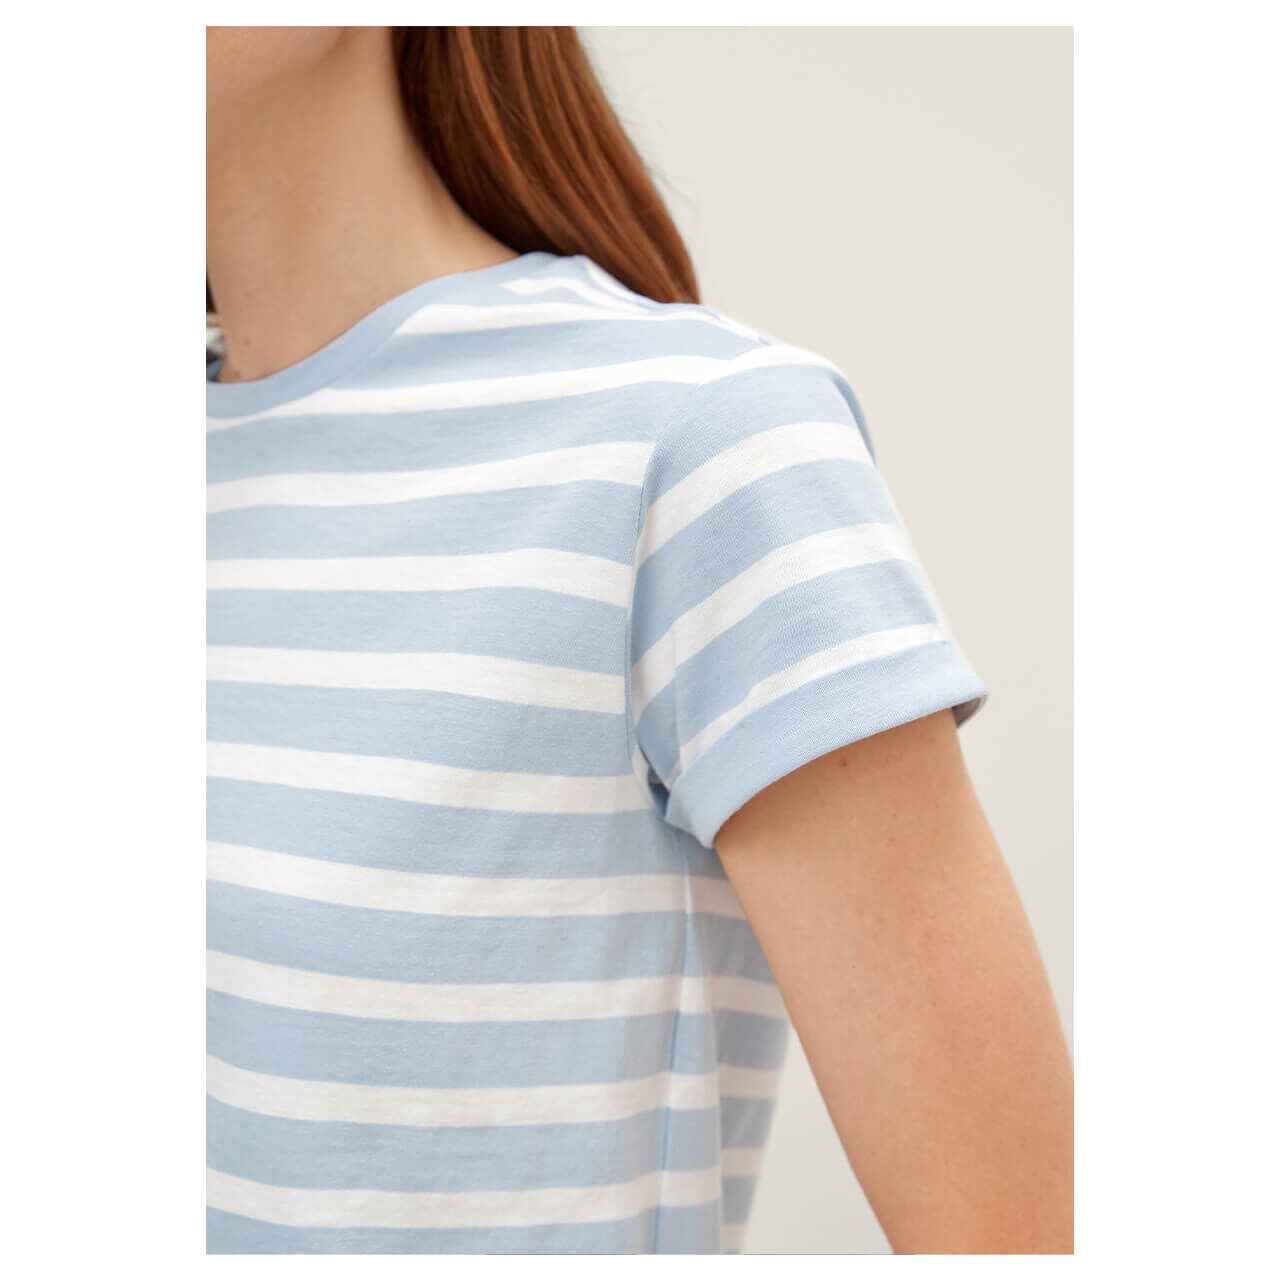 Comma T-Shirt für Damen in Hellblau gestreift, FarbNr.: 50G5